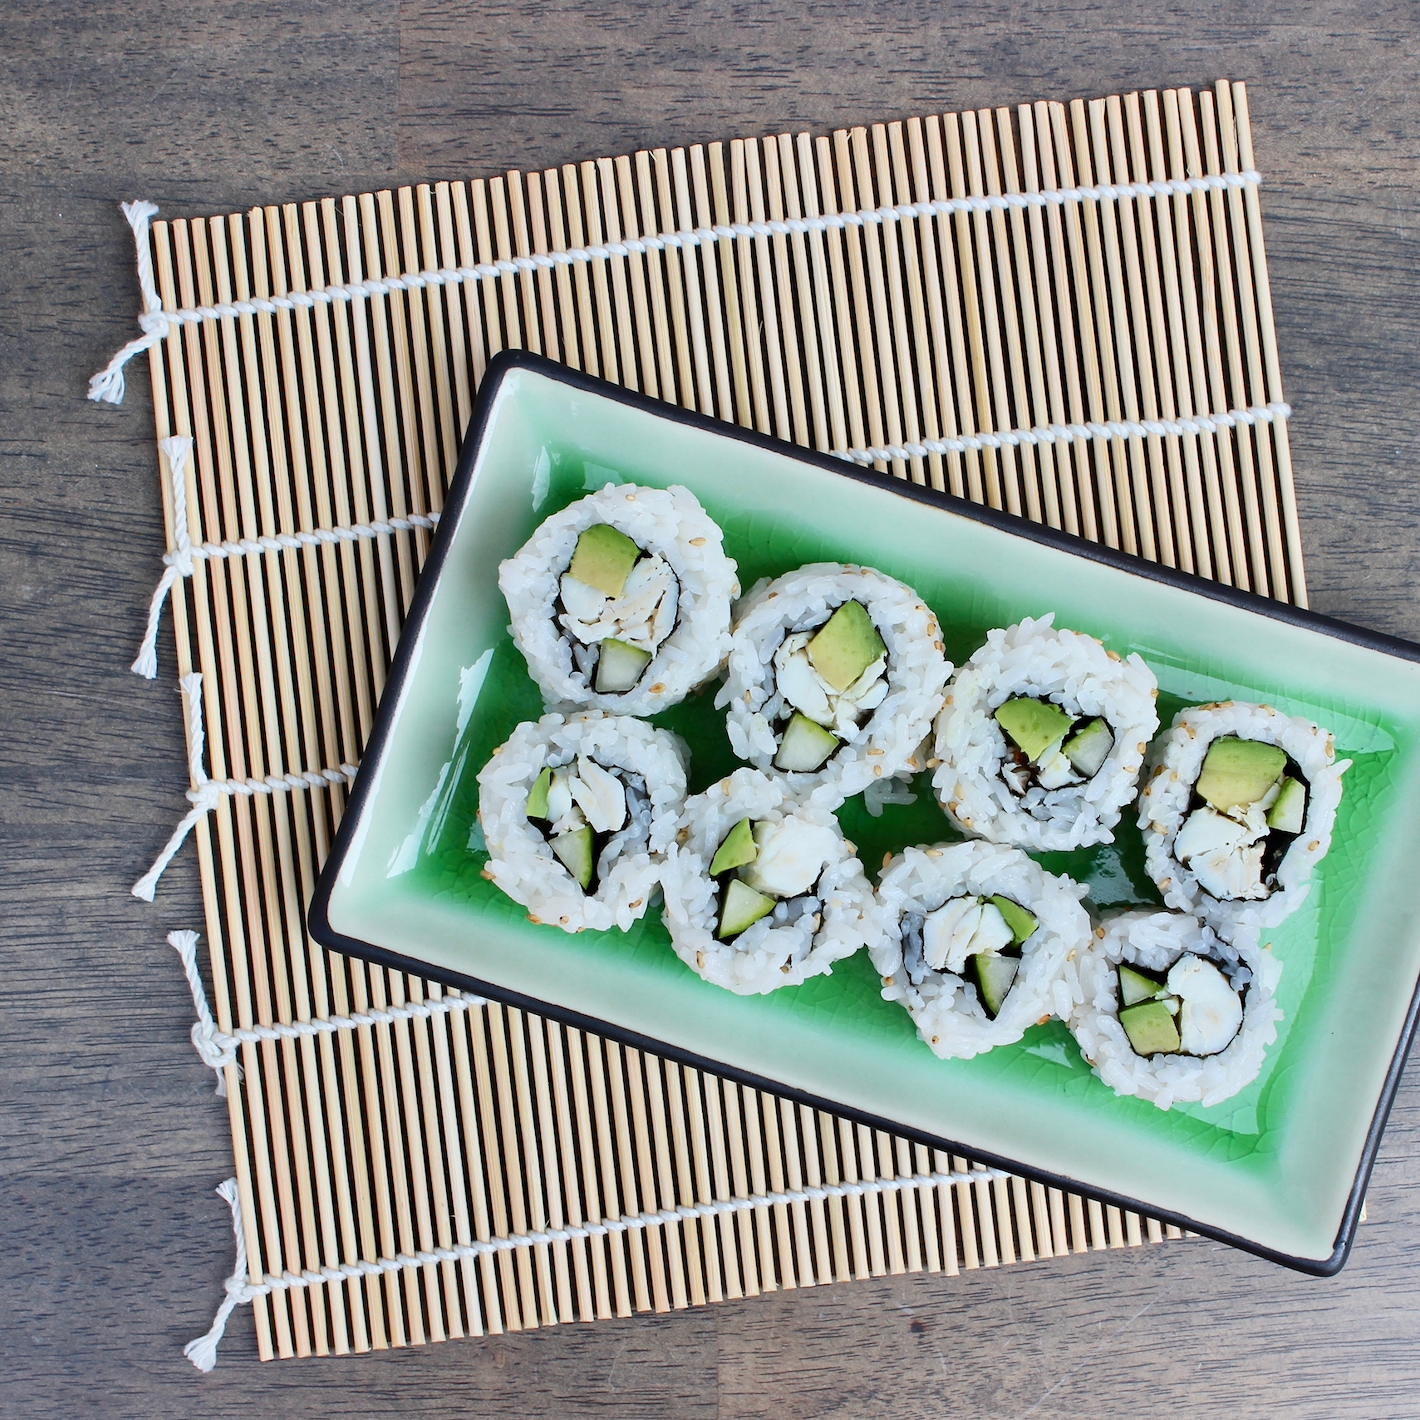 Sushi Making Kit, make your own sushi at home, recipe